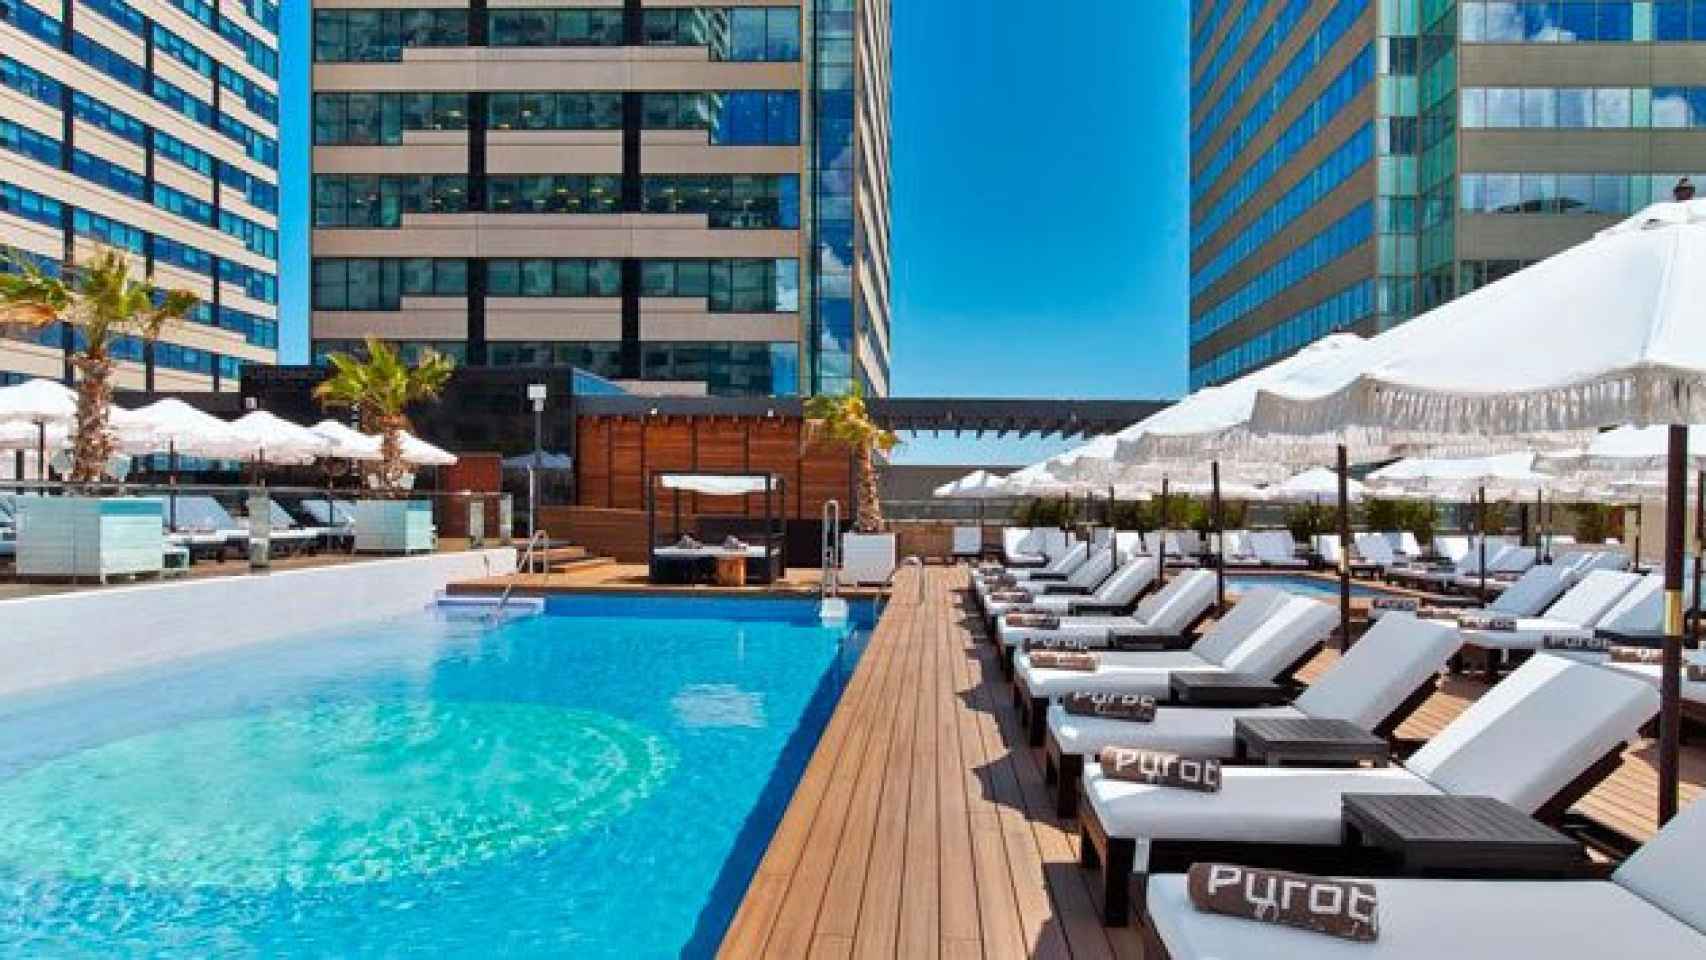 Zona de piscina del hotel Hilton Diagonal Mar de Barcelona / CG